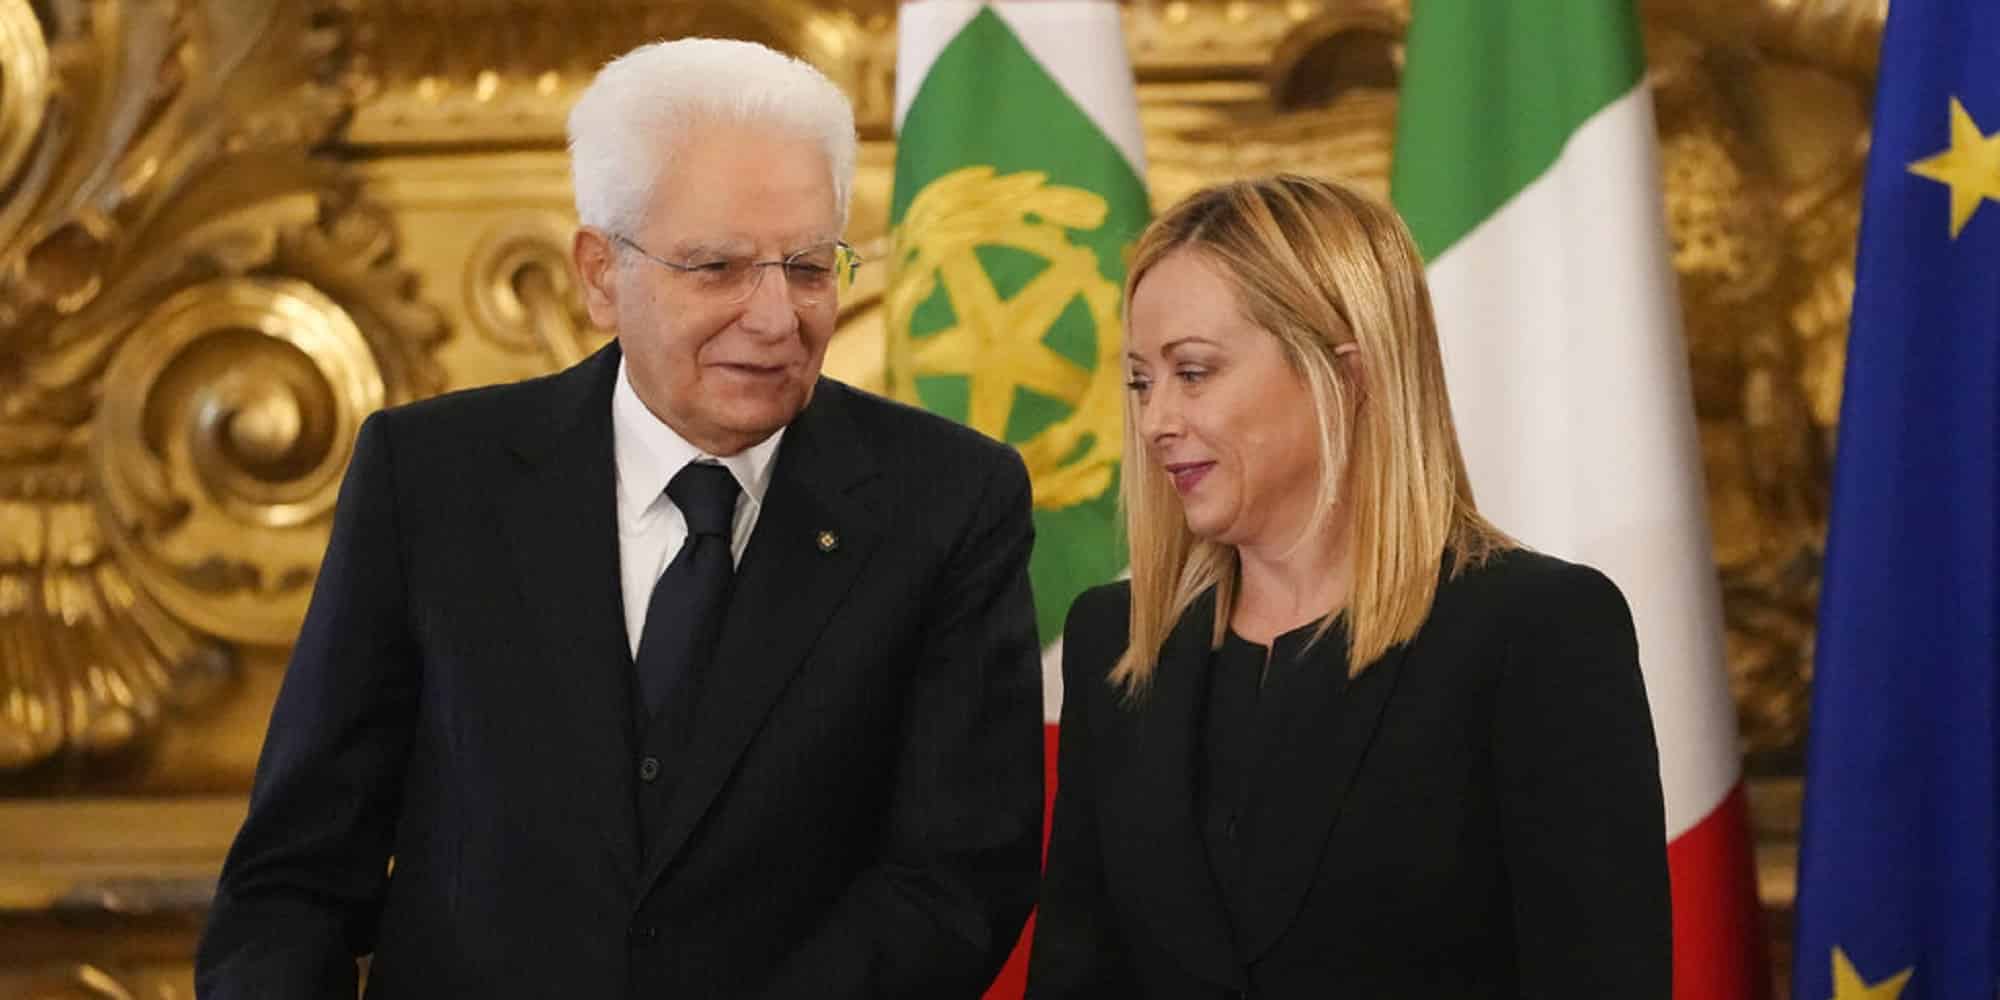 Η Τζόρτζια Μελόνι ορκίστηκε πρωθυπουργός στην Ιταλία